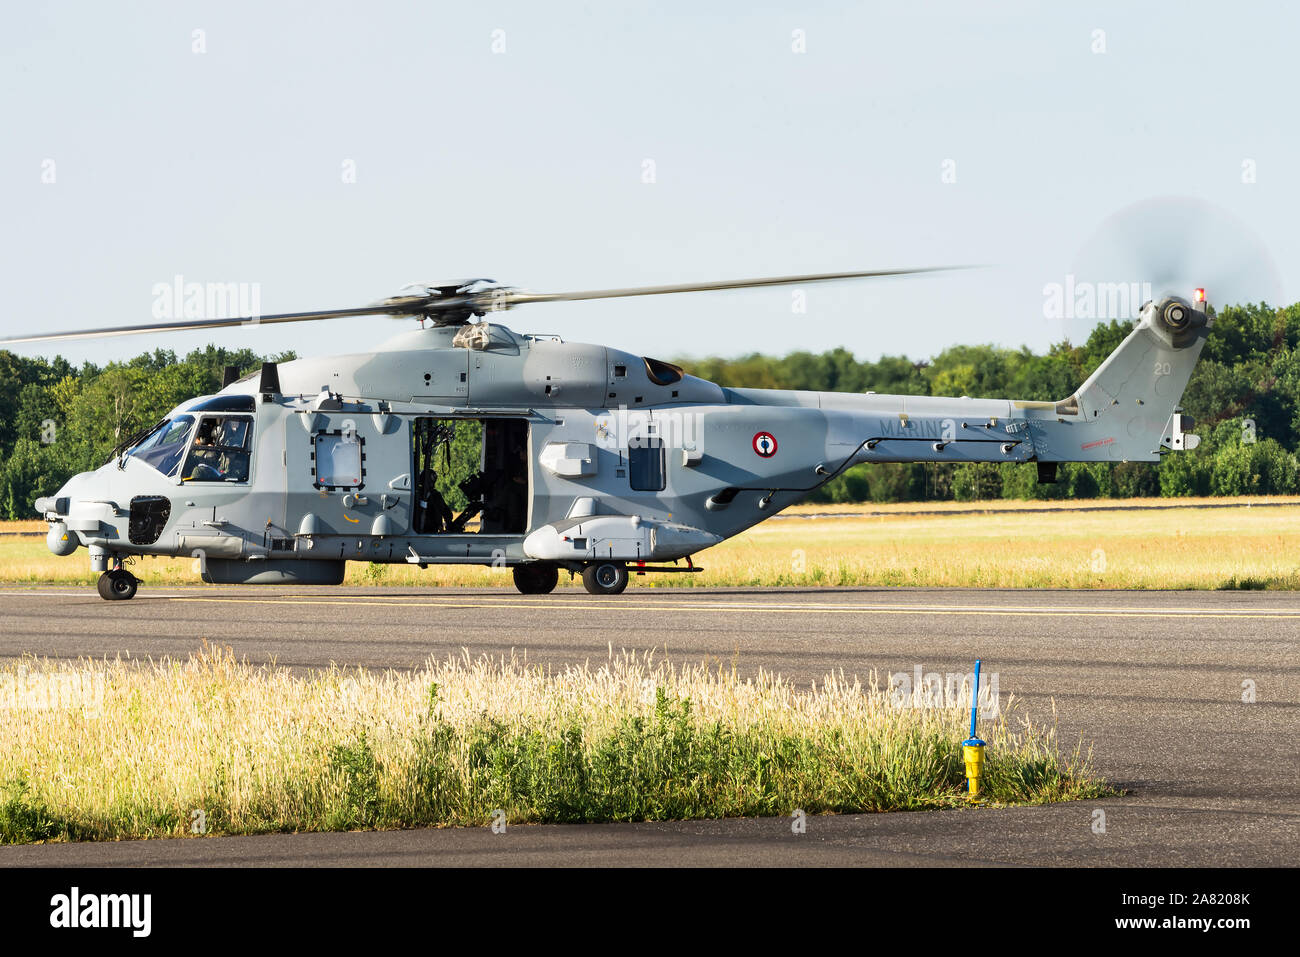 Ein NHIndustries NH 90 - Rolle der militärischen Hubschrauber der italienischen Marine. Stockfoto